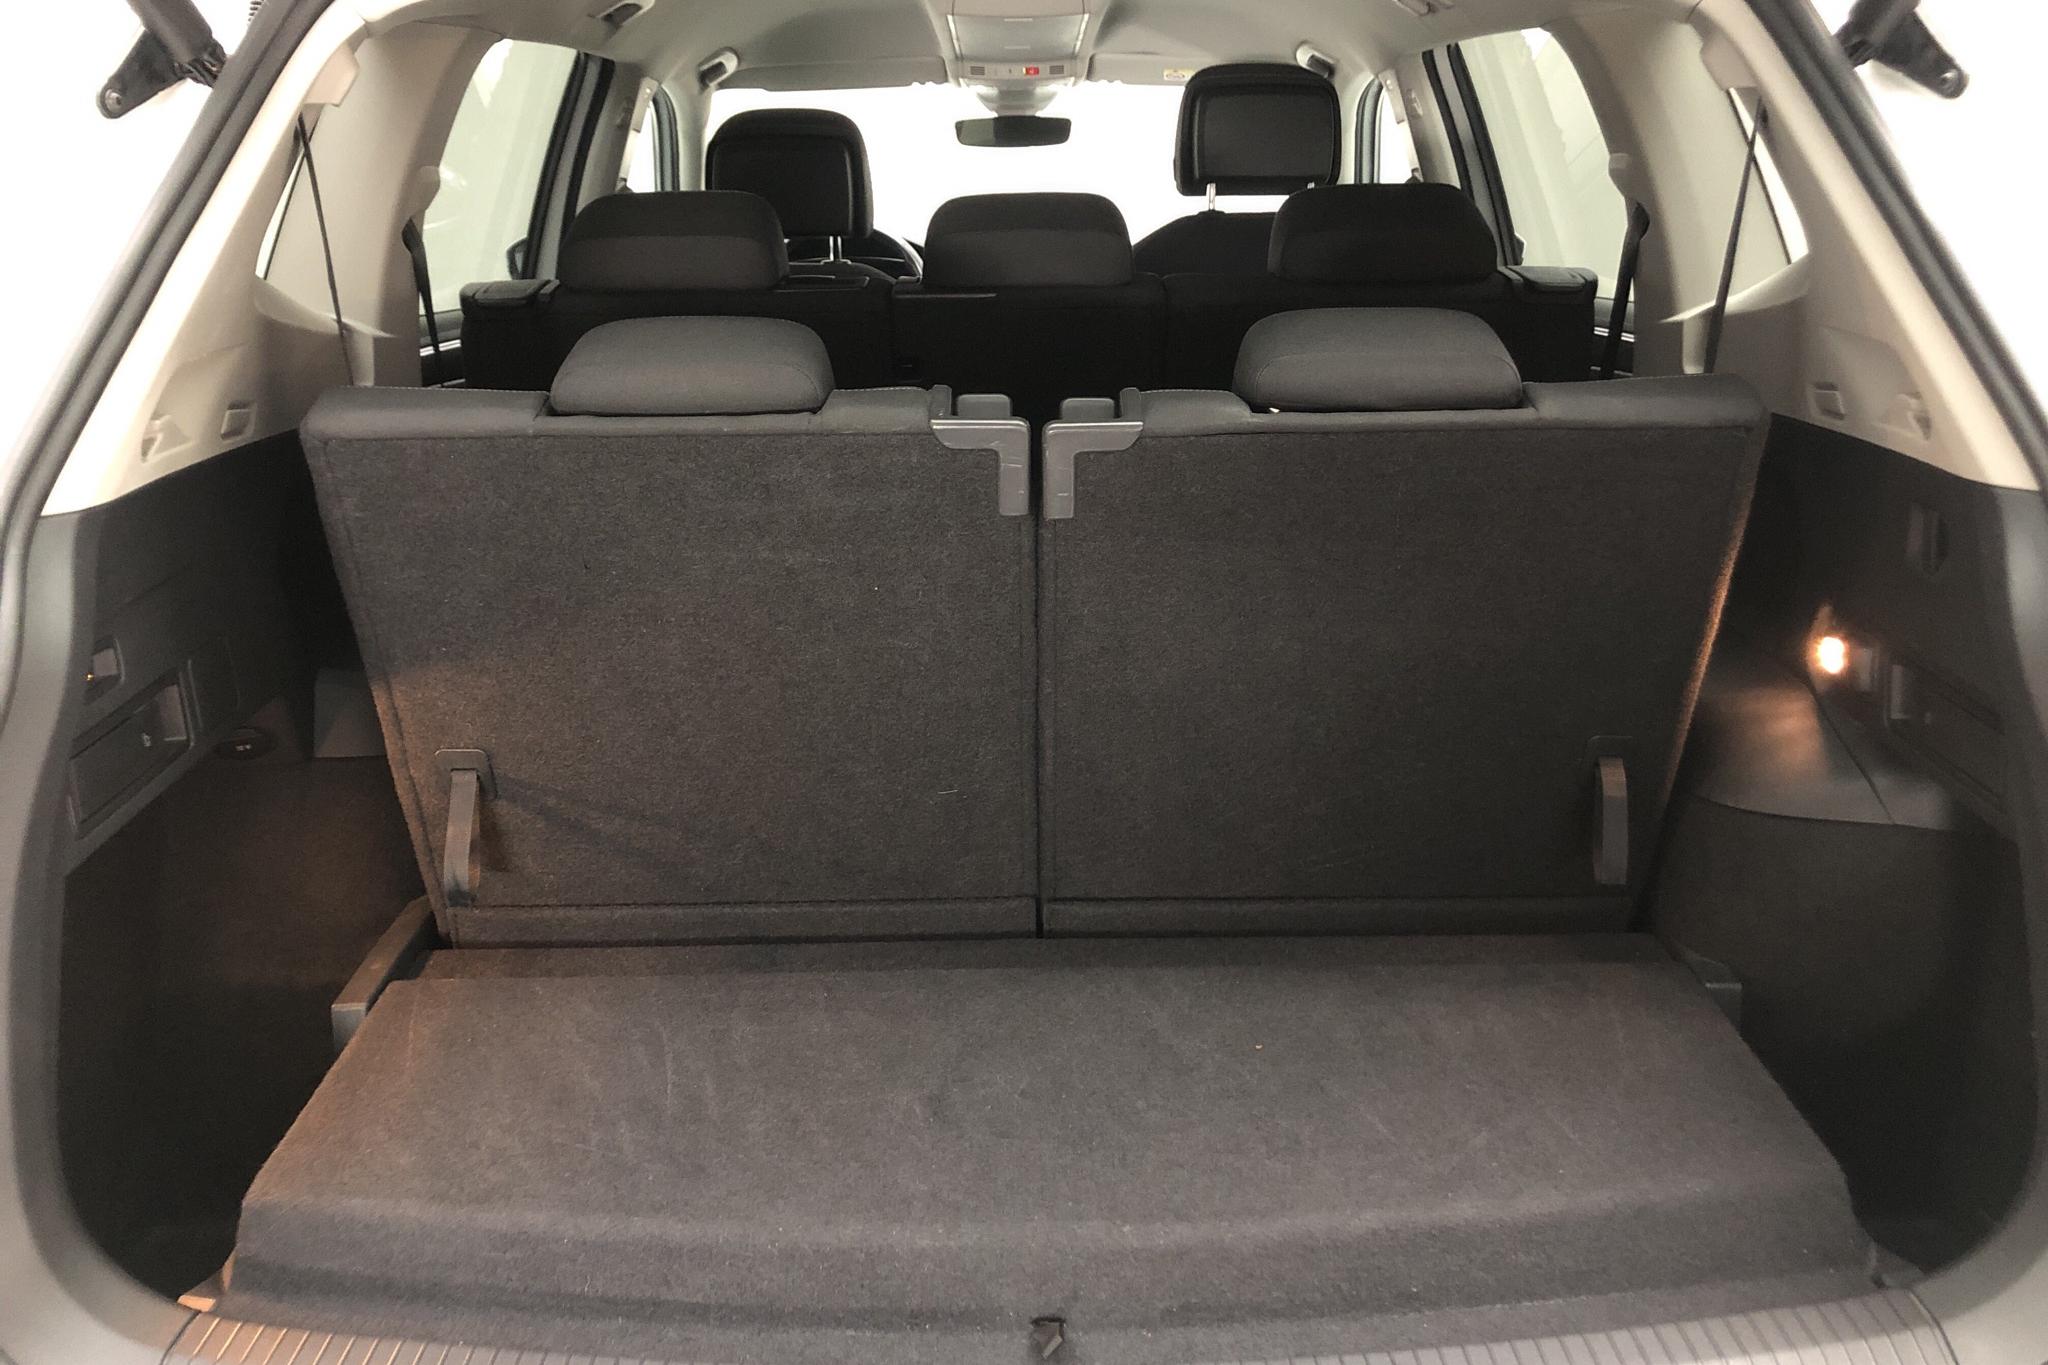 VW Tiguan Allspace 2.0 TDI 4MOTION (190hk) - 116 500 km - Automatic - white - 2019